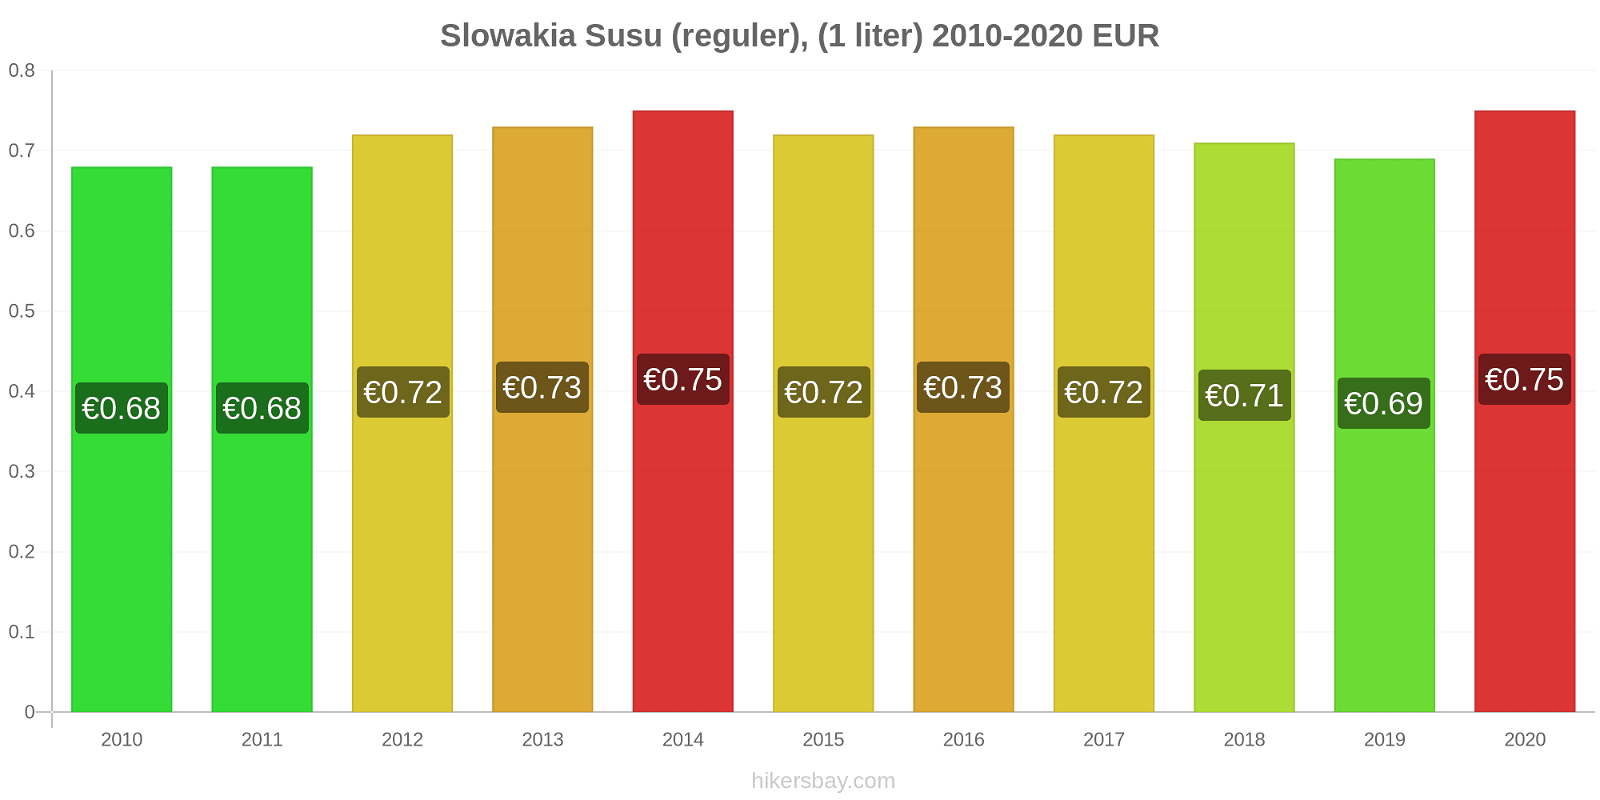 Slowakia perubahan harga Susu (reguler), (1 liter) hikersbay.com